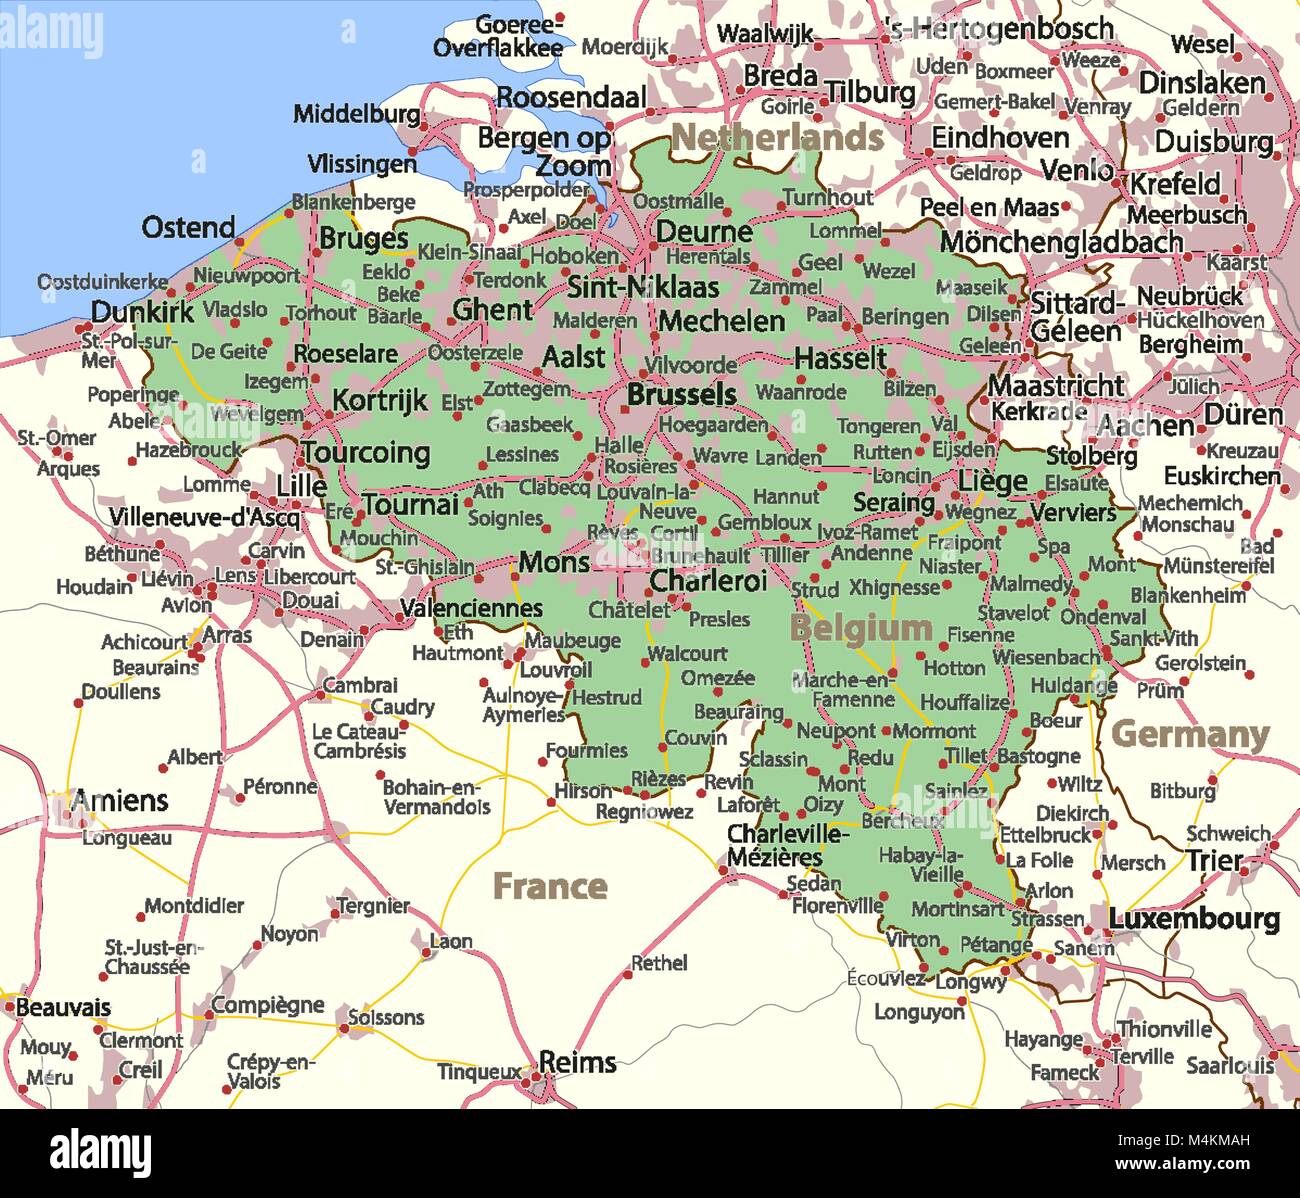 Belgium Border Map